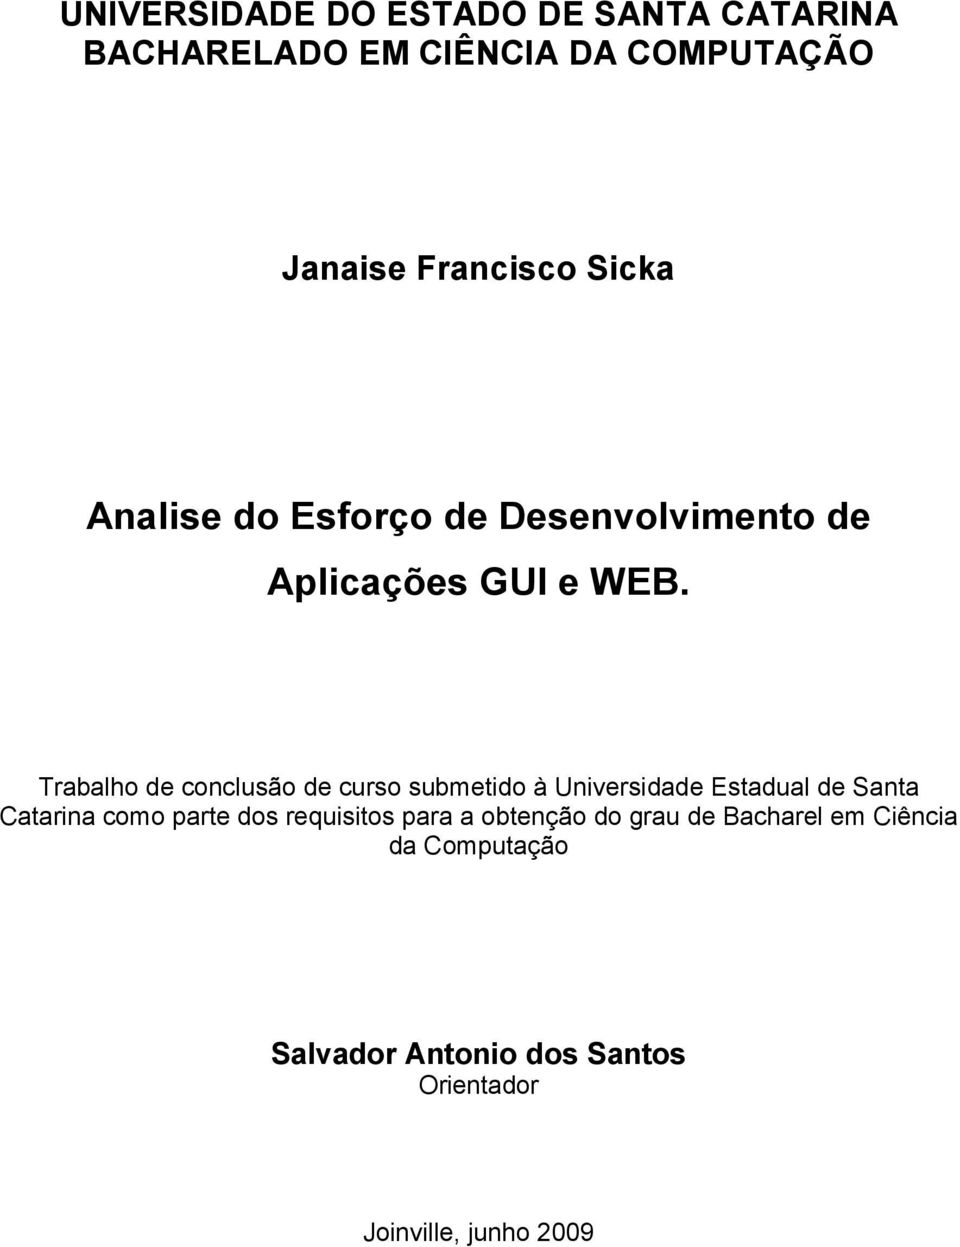 Trabalho de conclusão de curso submetido à Universidade Estadual de Santa Catarina como parte dos